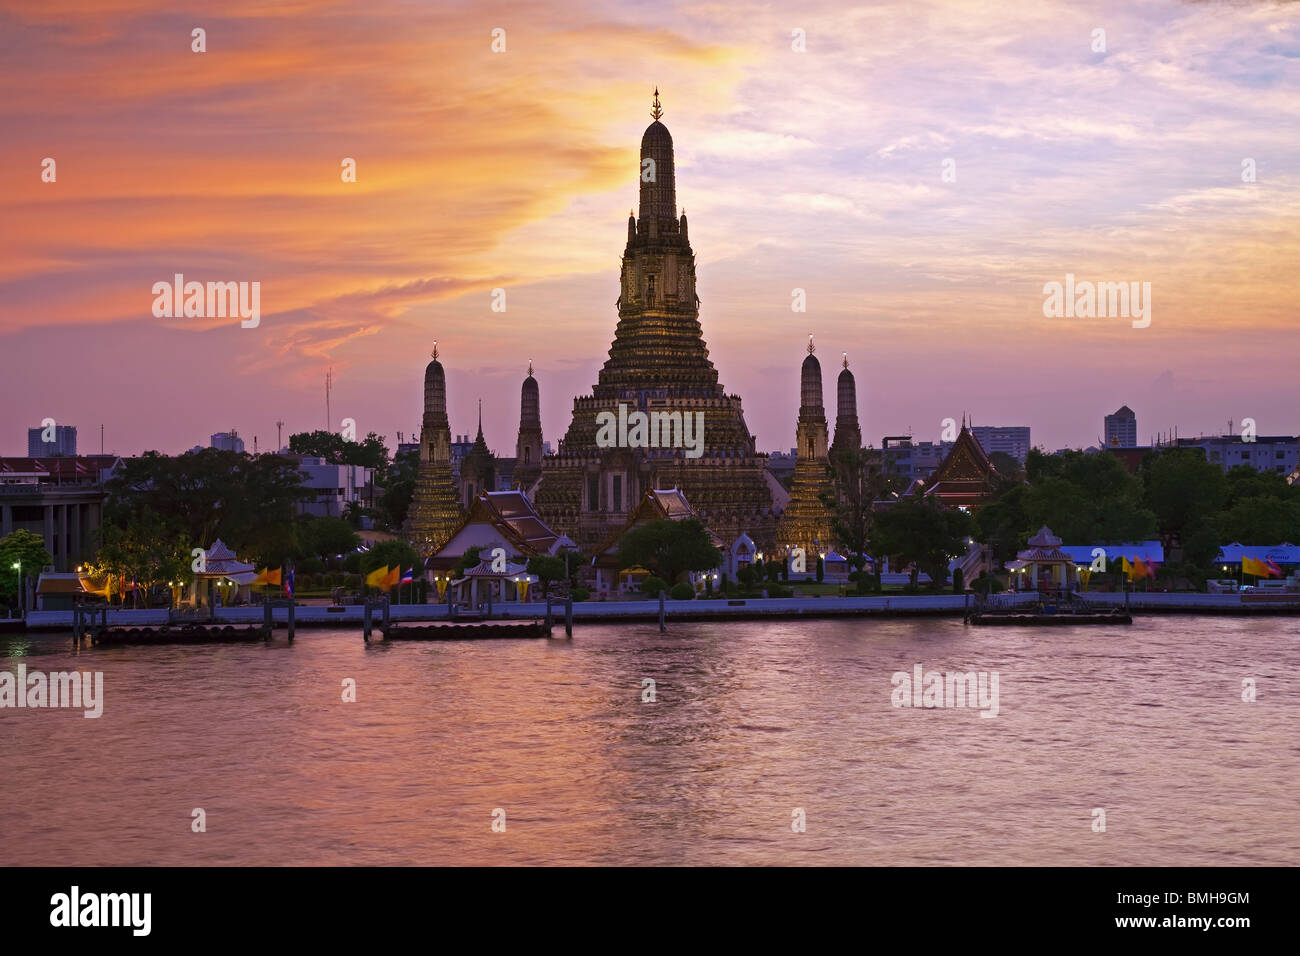 Sud-est de l'Asie, Thaïlande, Bangkok, Wat Arun, Temple de l'aube et la rivière Chao Phraya allumé au coucher du soleil Banque D'Images